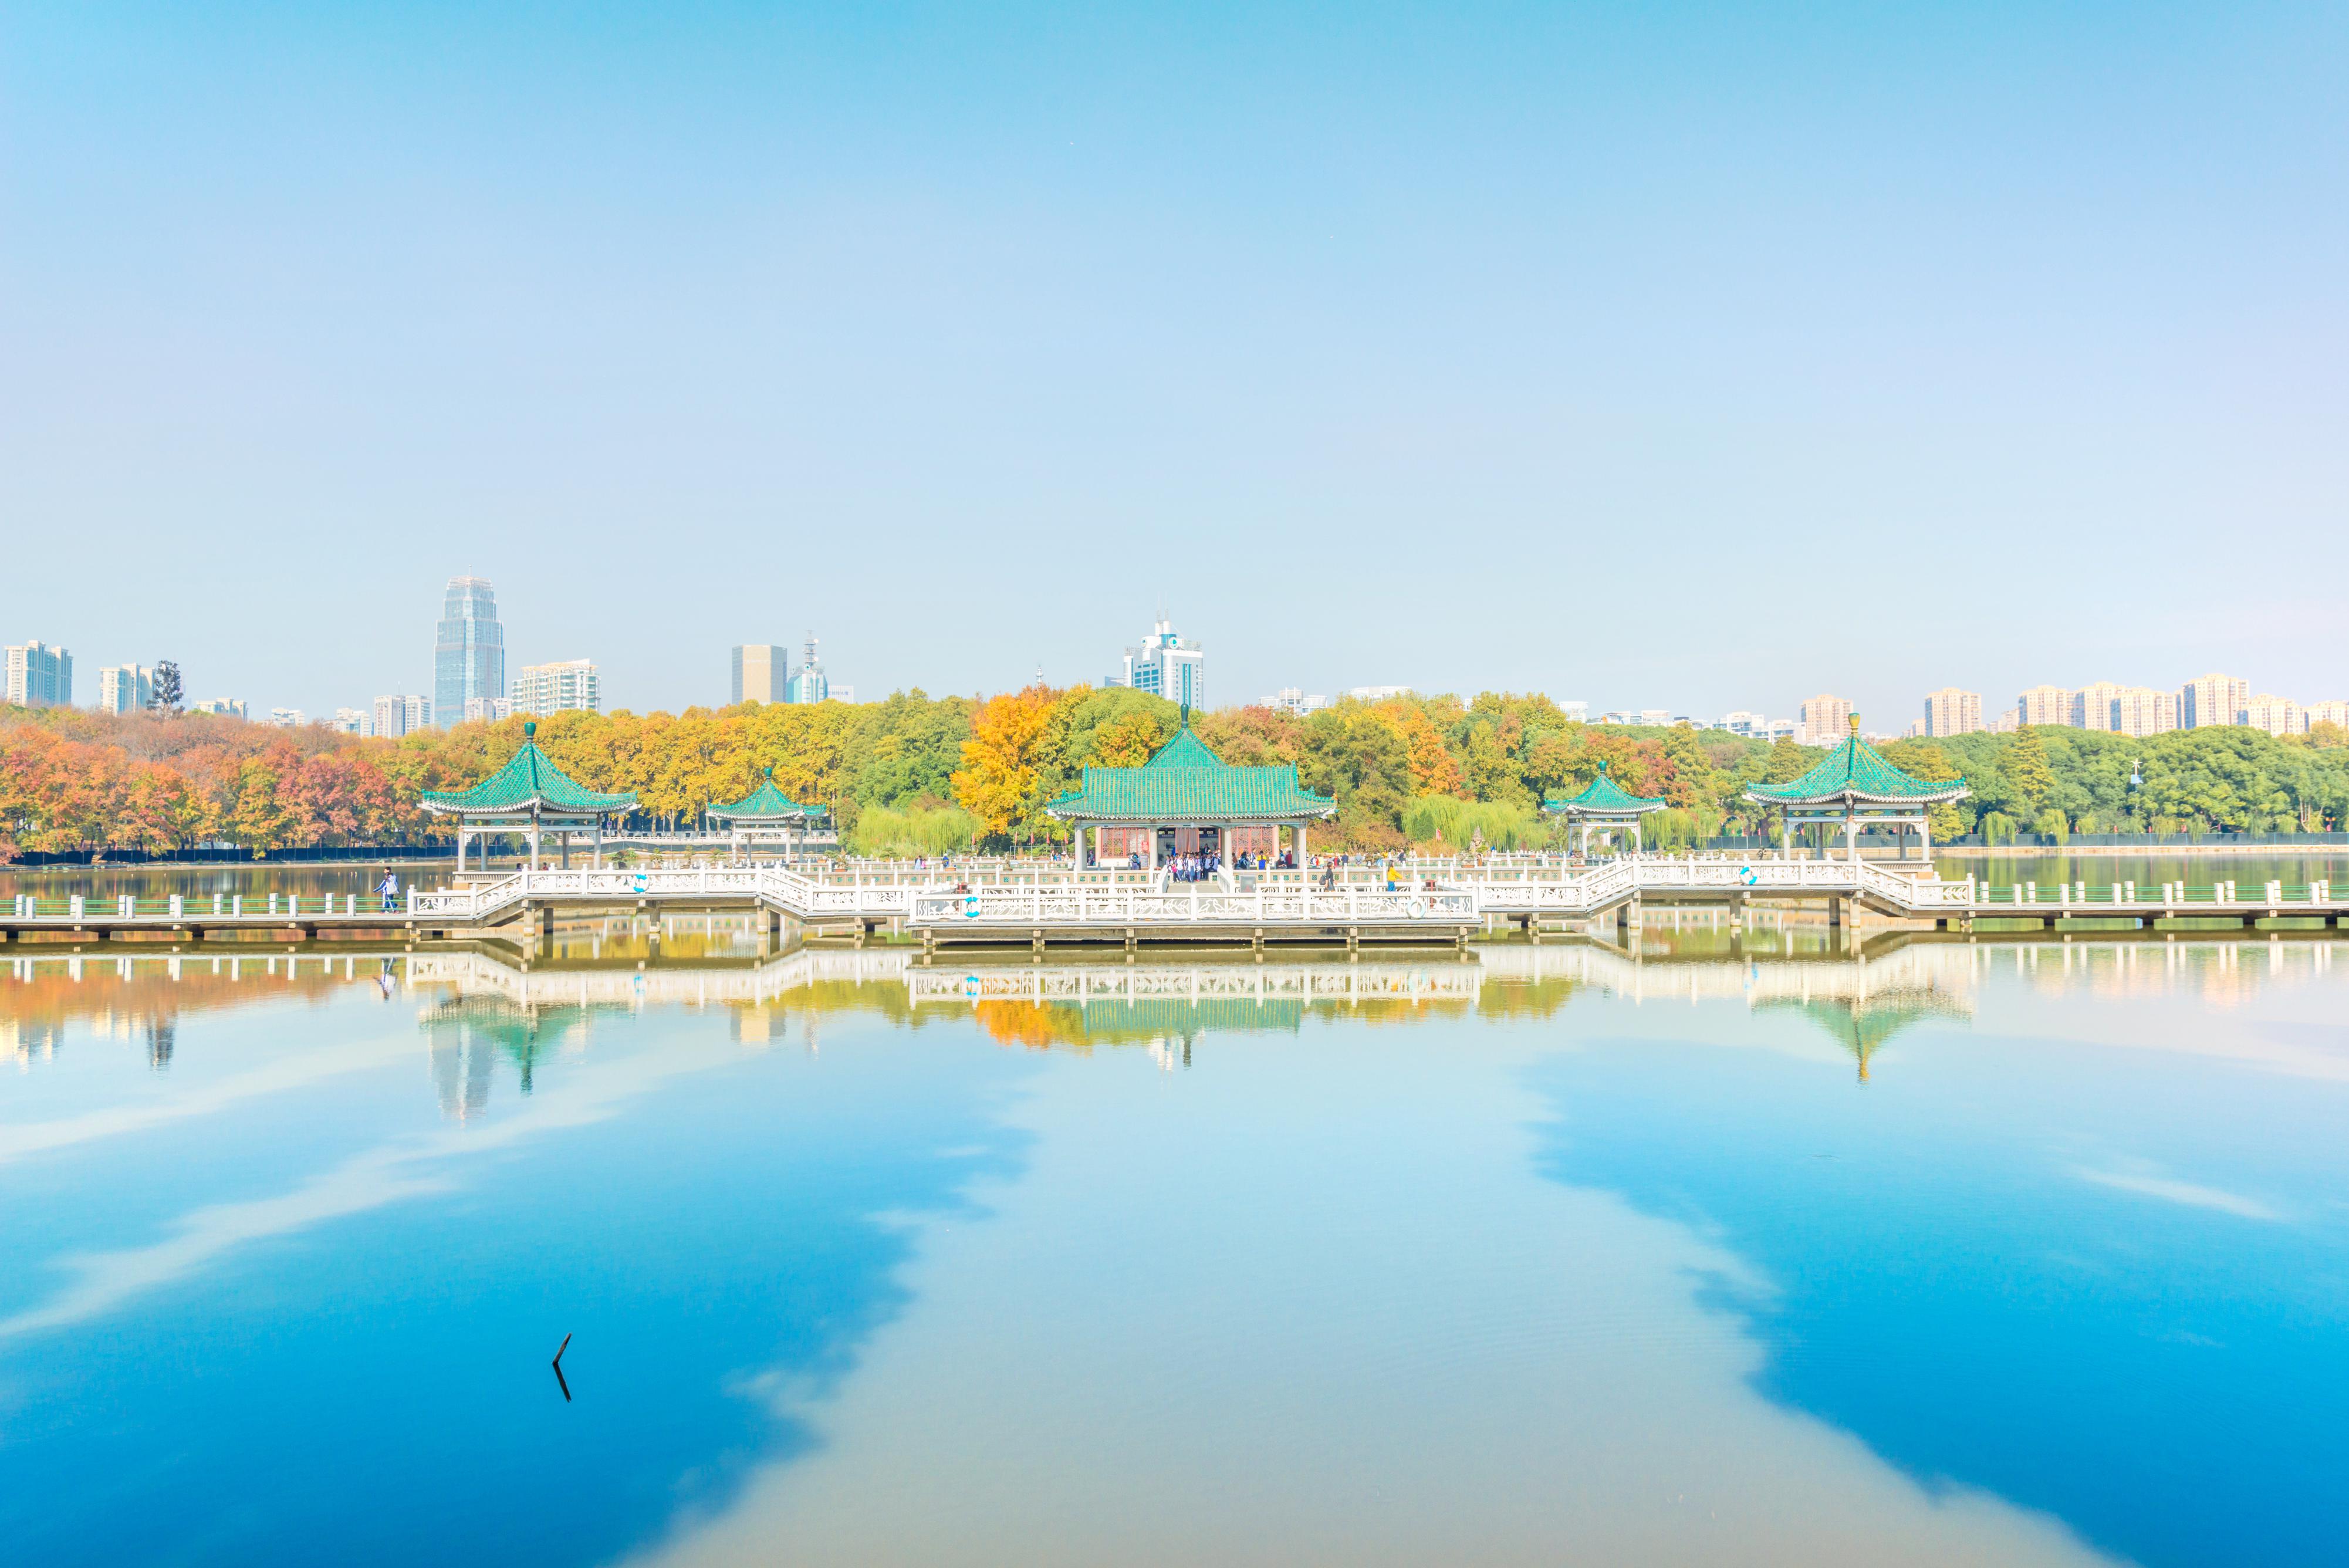 共 6 张 东湖帆船公园 暂无评分 景点地址 武汉市东湖生态旅游风景区